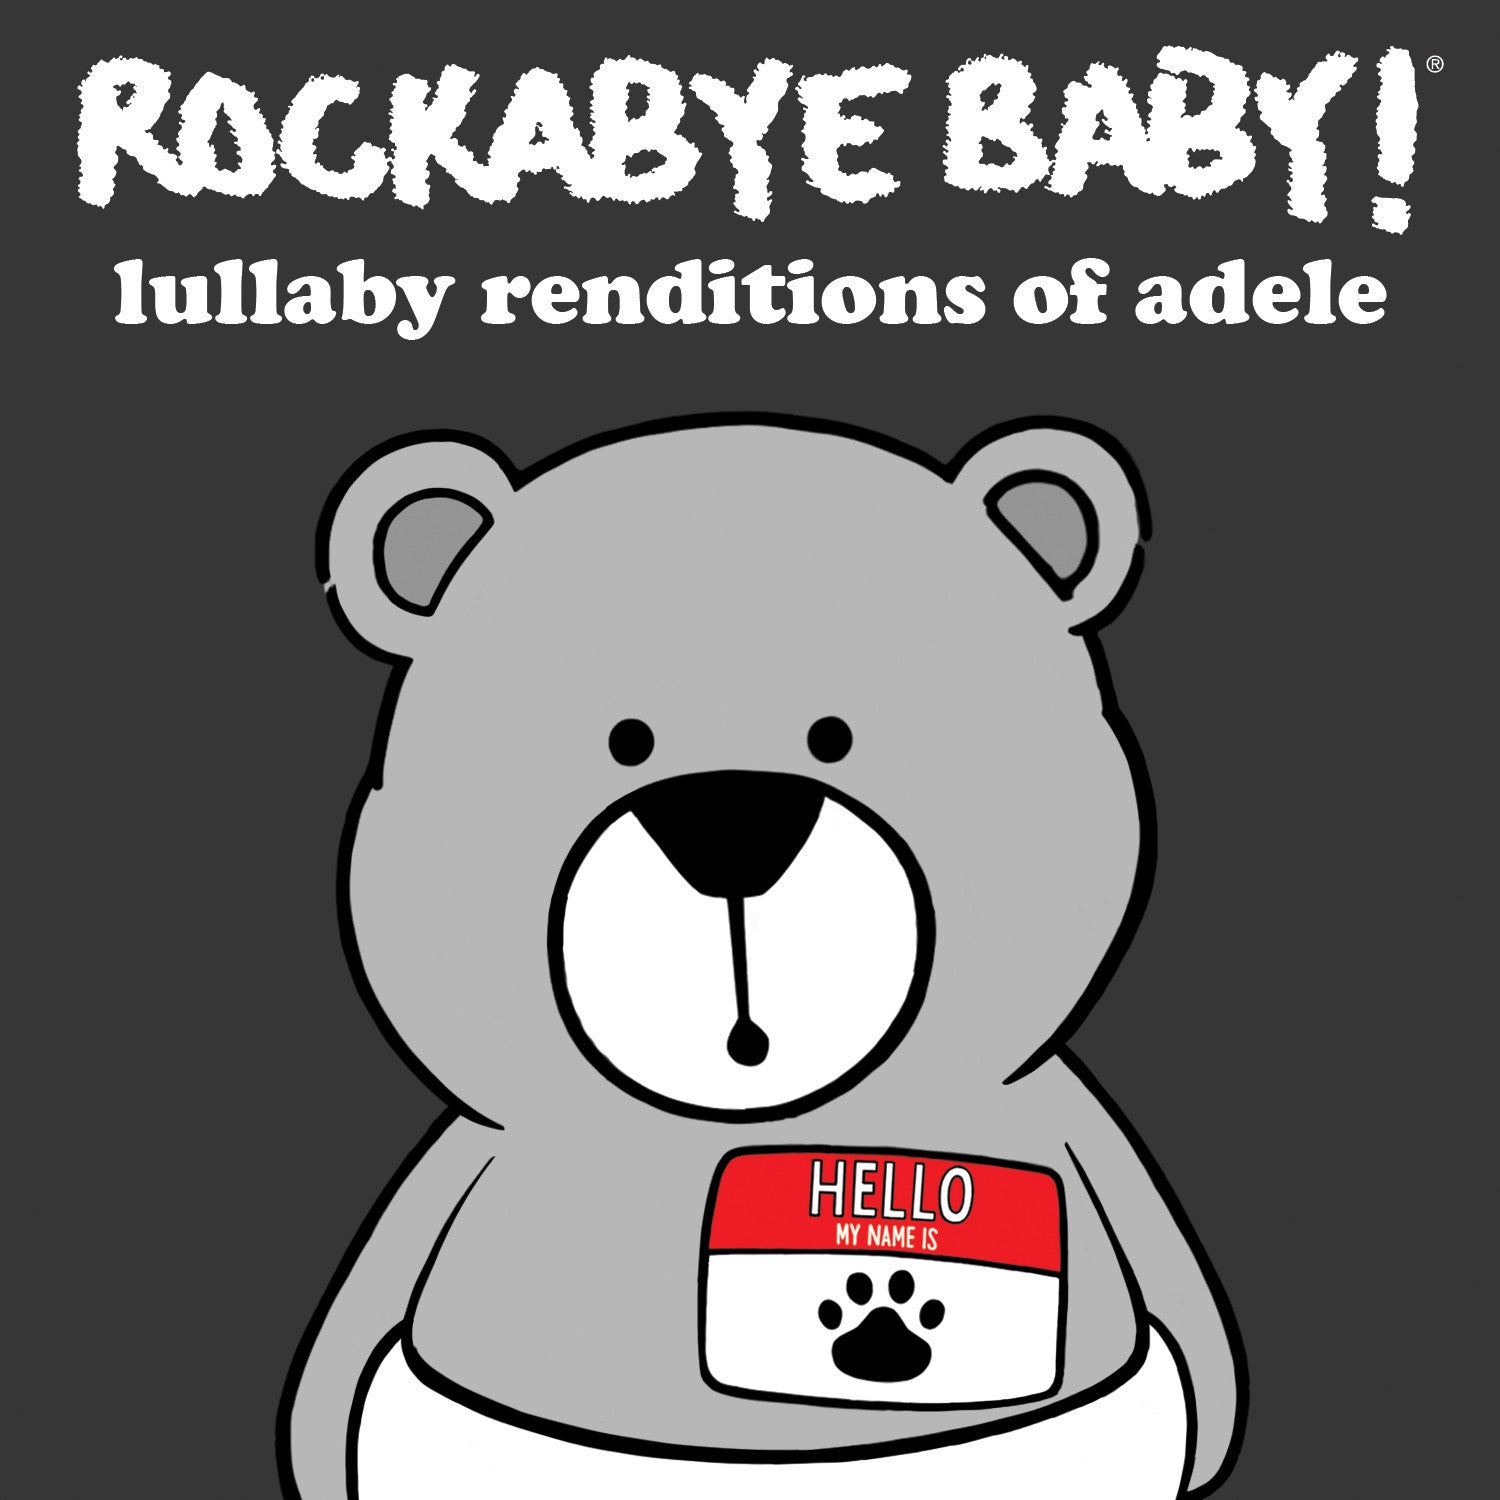 rockabye baby lullaby renditions adele